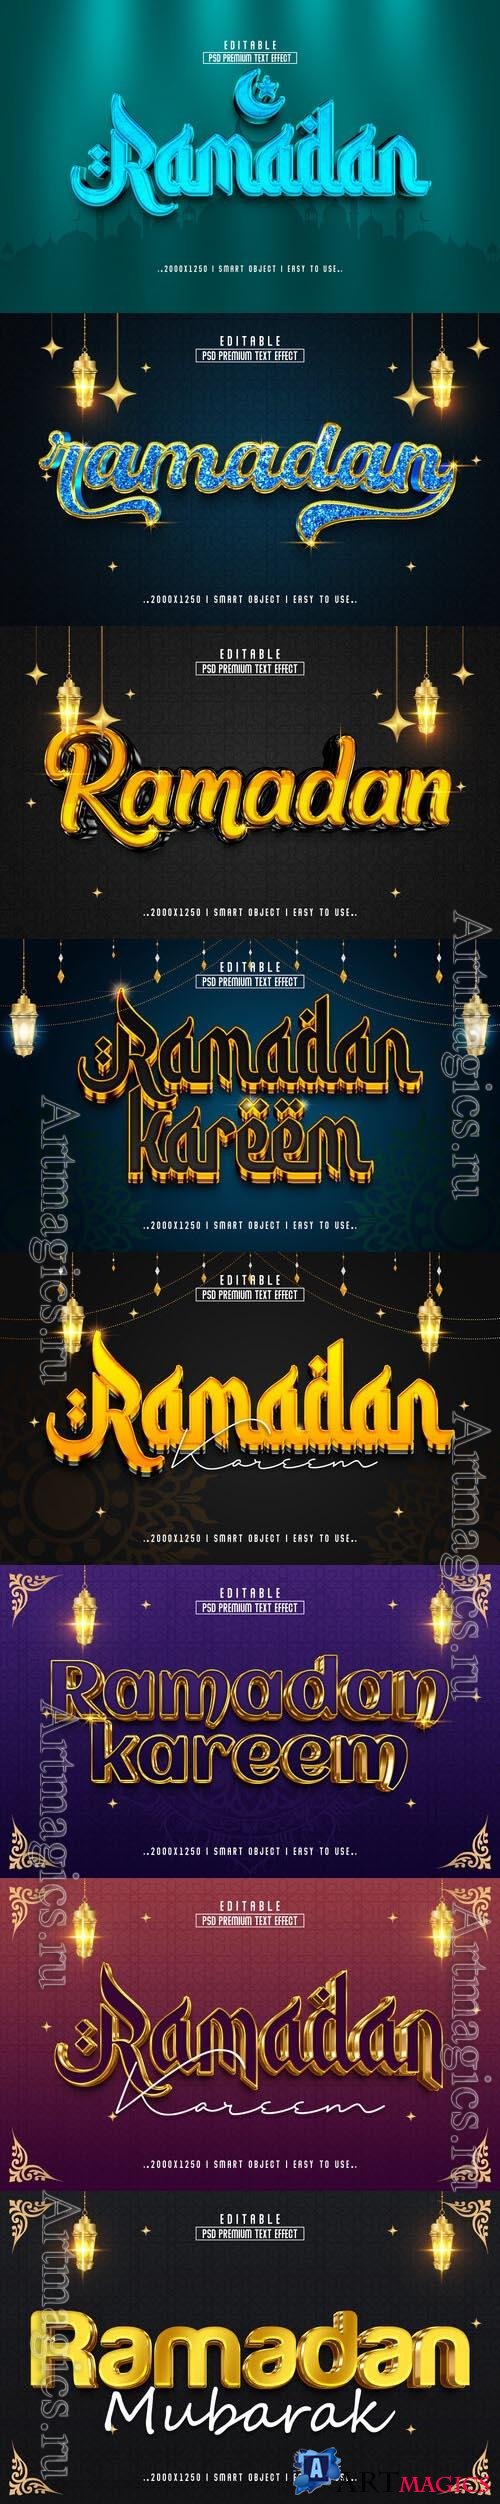 8 Psd Ramadan style text effect editable set vol 2